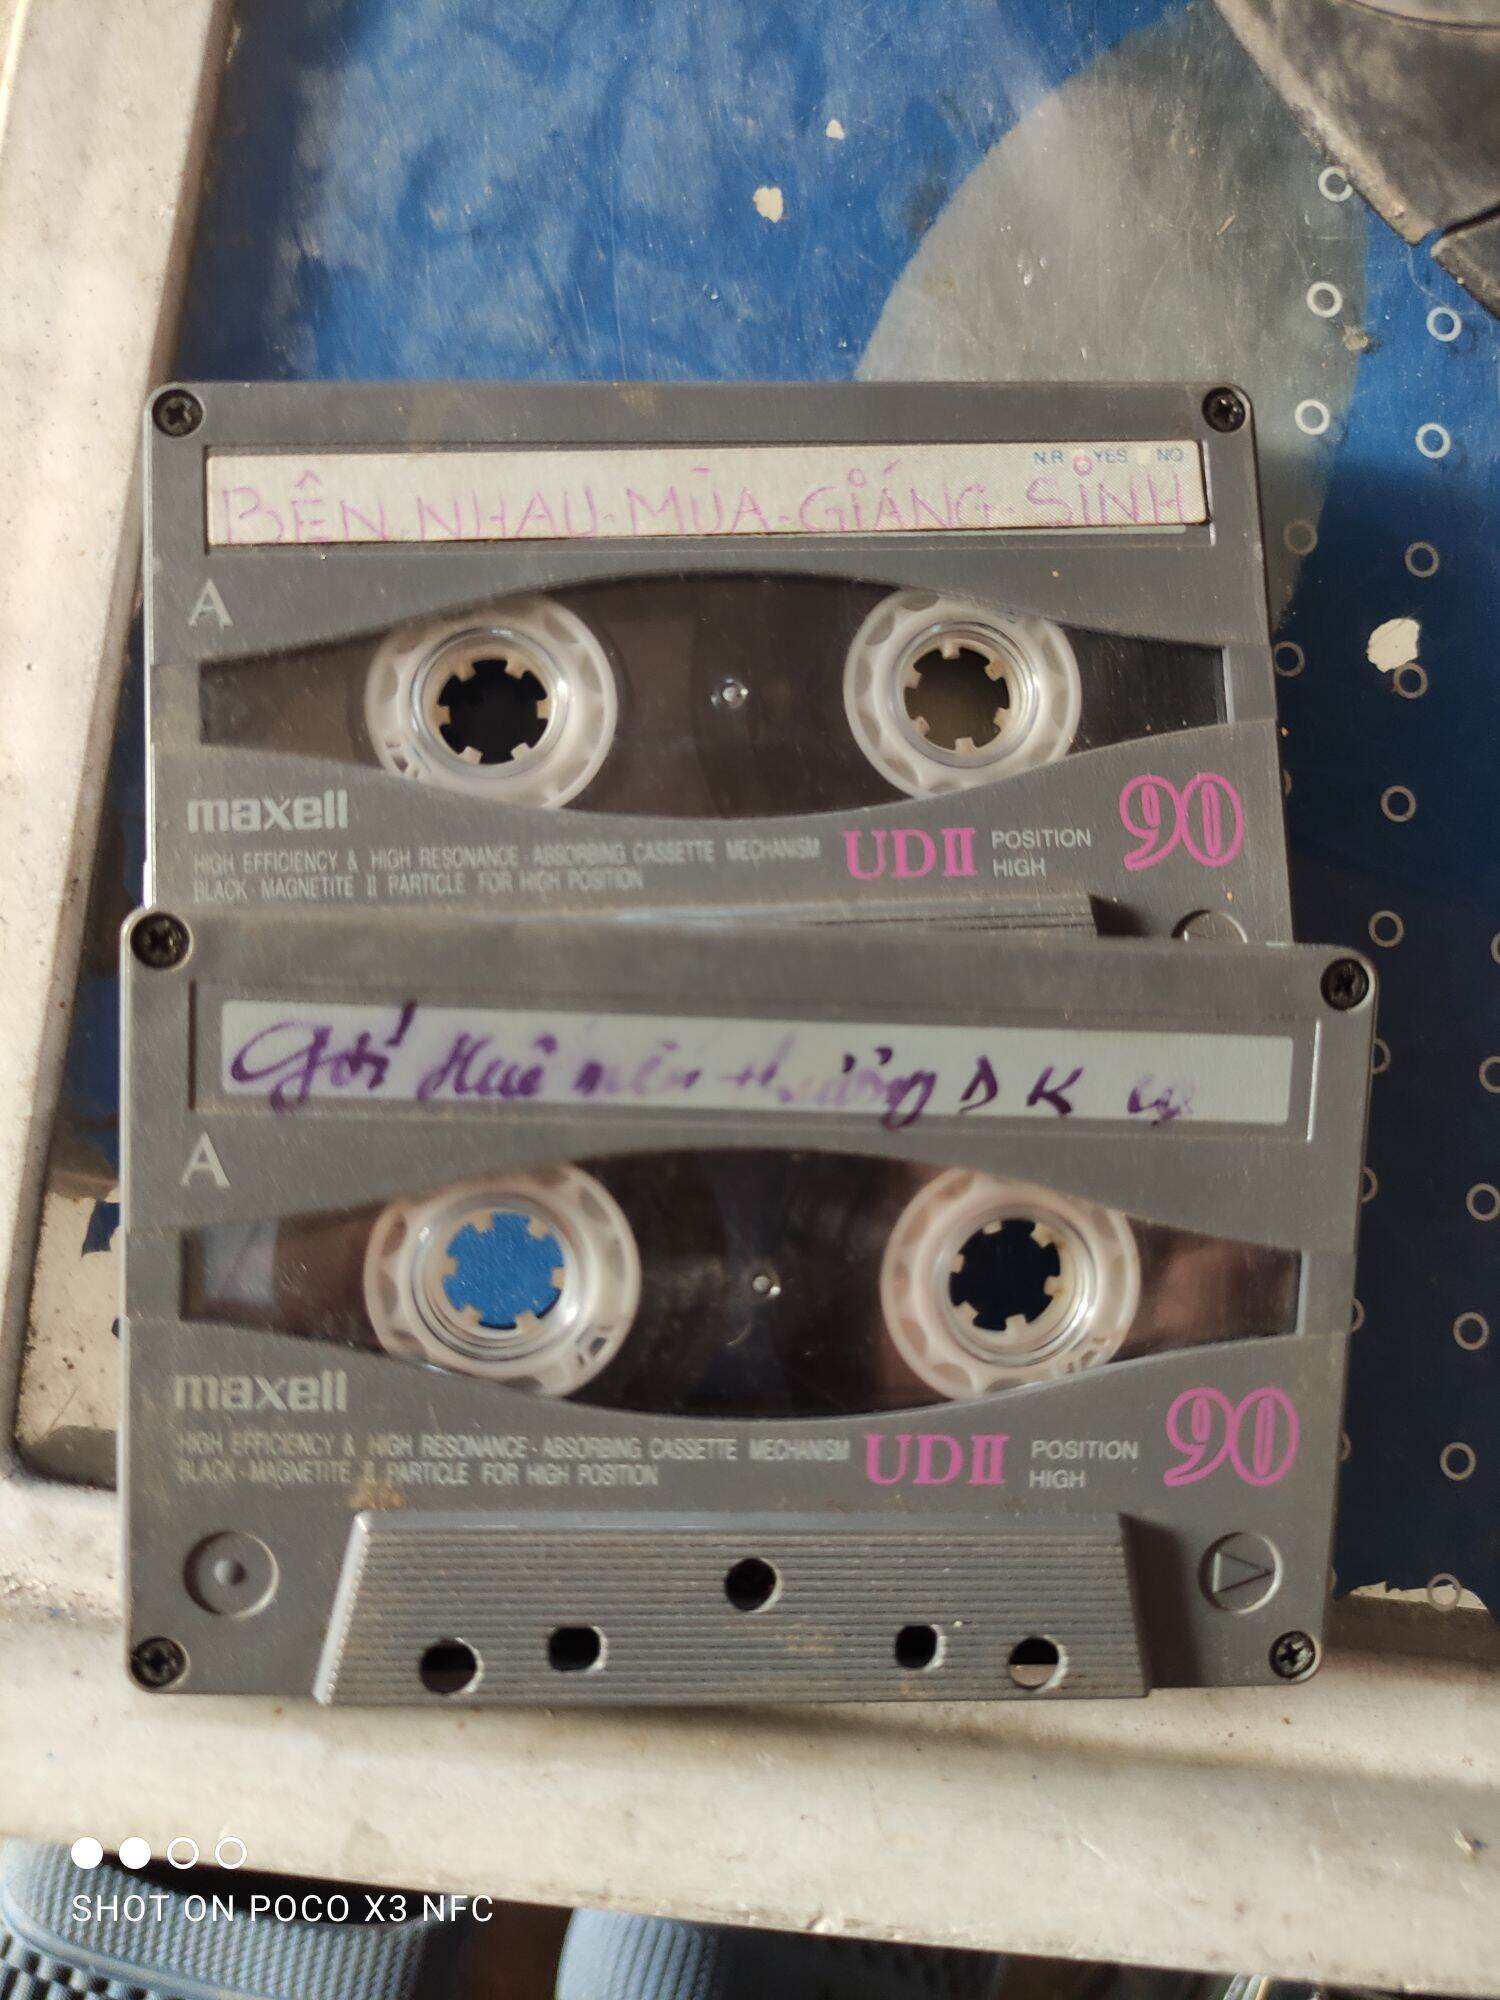 băng cassette maxell (combo 2 cuốn có nhạc như hình ảnh)